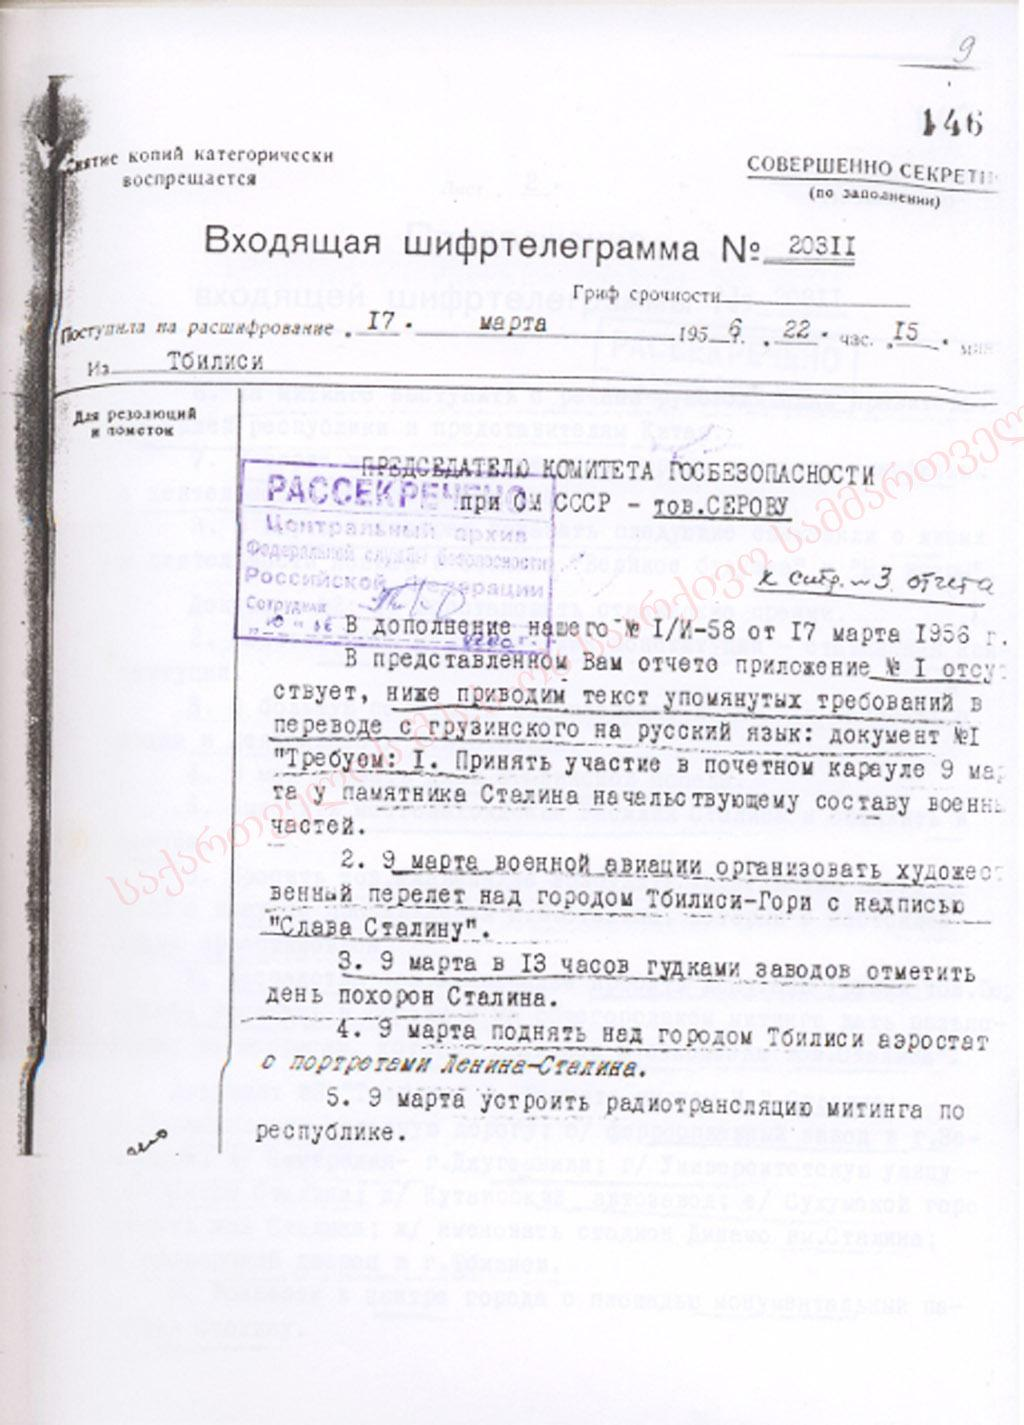 Входящие шифрованные телеграммы, рассекреченные ФСБ Российской Федерации, о событиях 5-9 марта 1956 г. Шифртелеграмма № 20311 от 17 марта 1956 г.